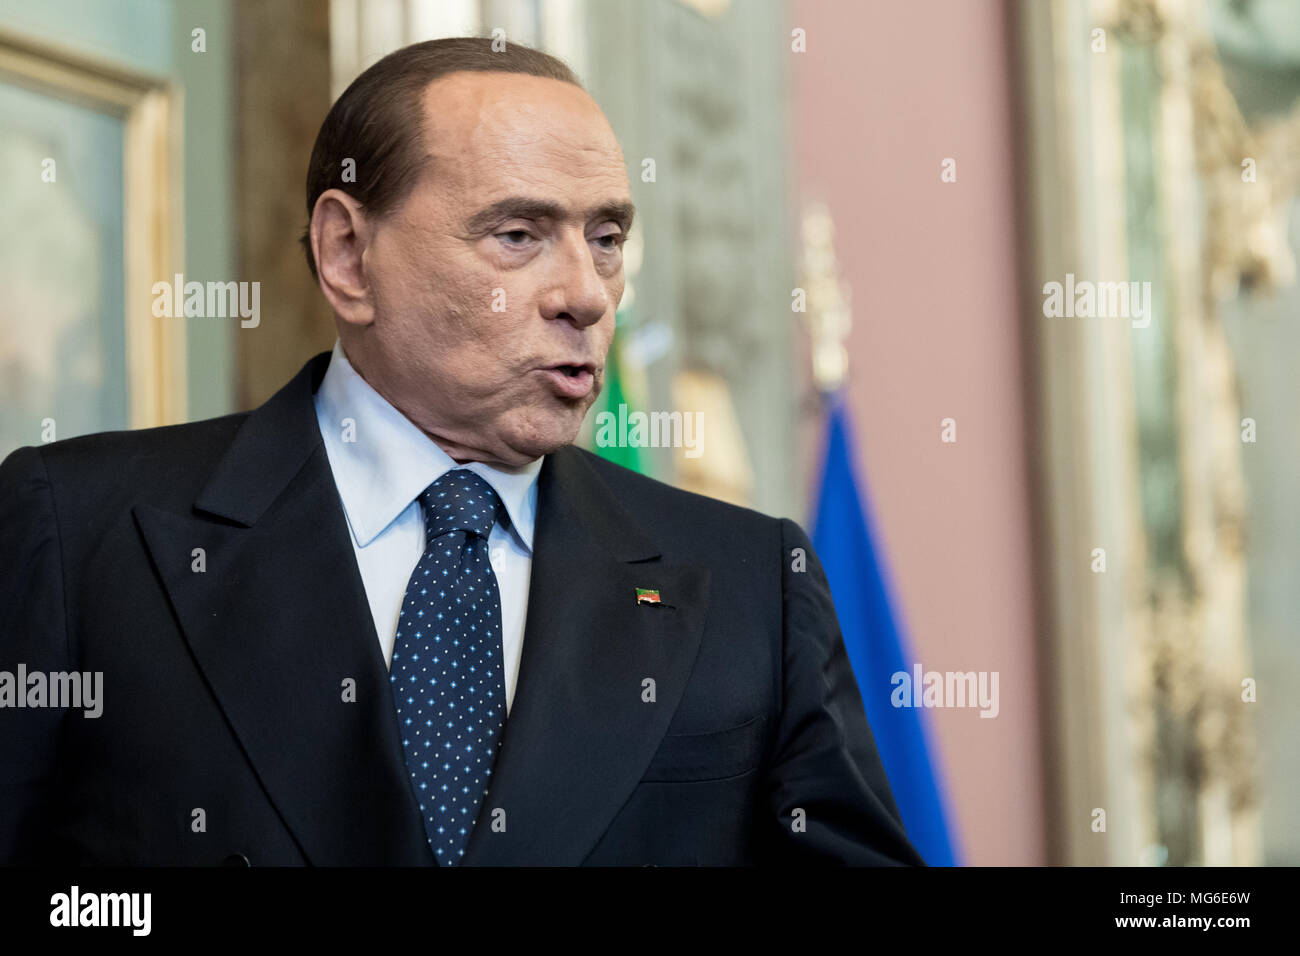 Silvio Berlusconi, leader of Forza Italia Party, after the press conference in the Senate of the Italian Republic. Rome, Italy, 15th April 2018. Stock Photo